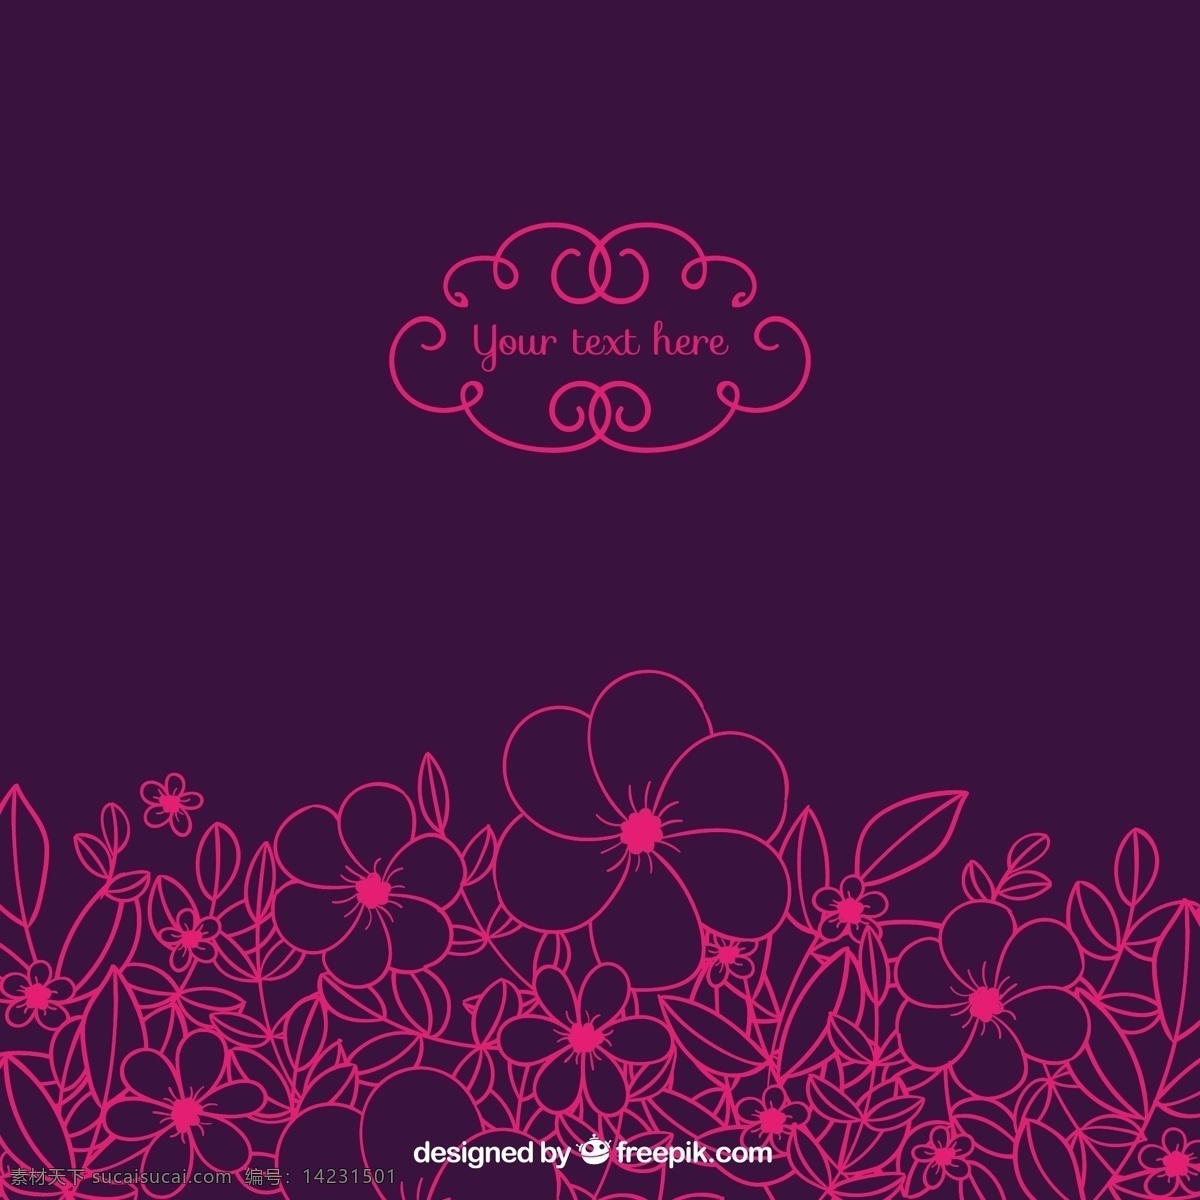 紫色背景 背景 花卉 春天 粉红色 紫色 绘画 手手绘粉红色 鲜花 抽纱 手绘 背景和基础 图标 高清 源文件